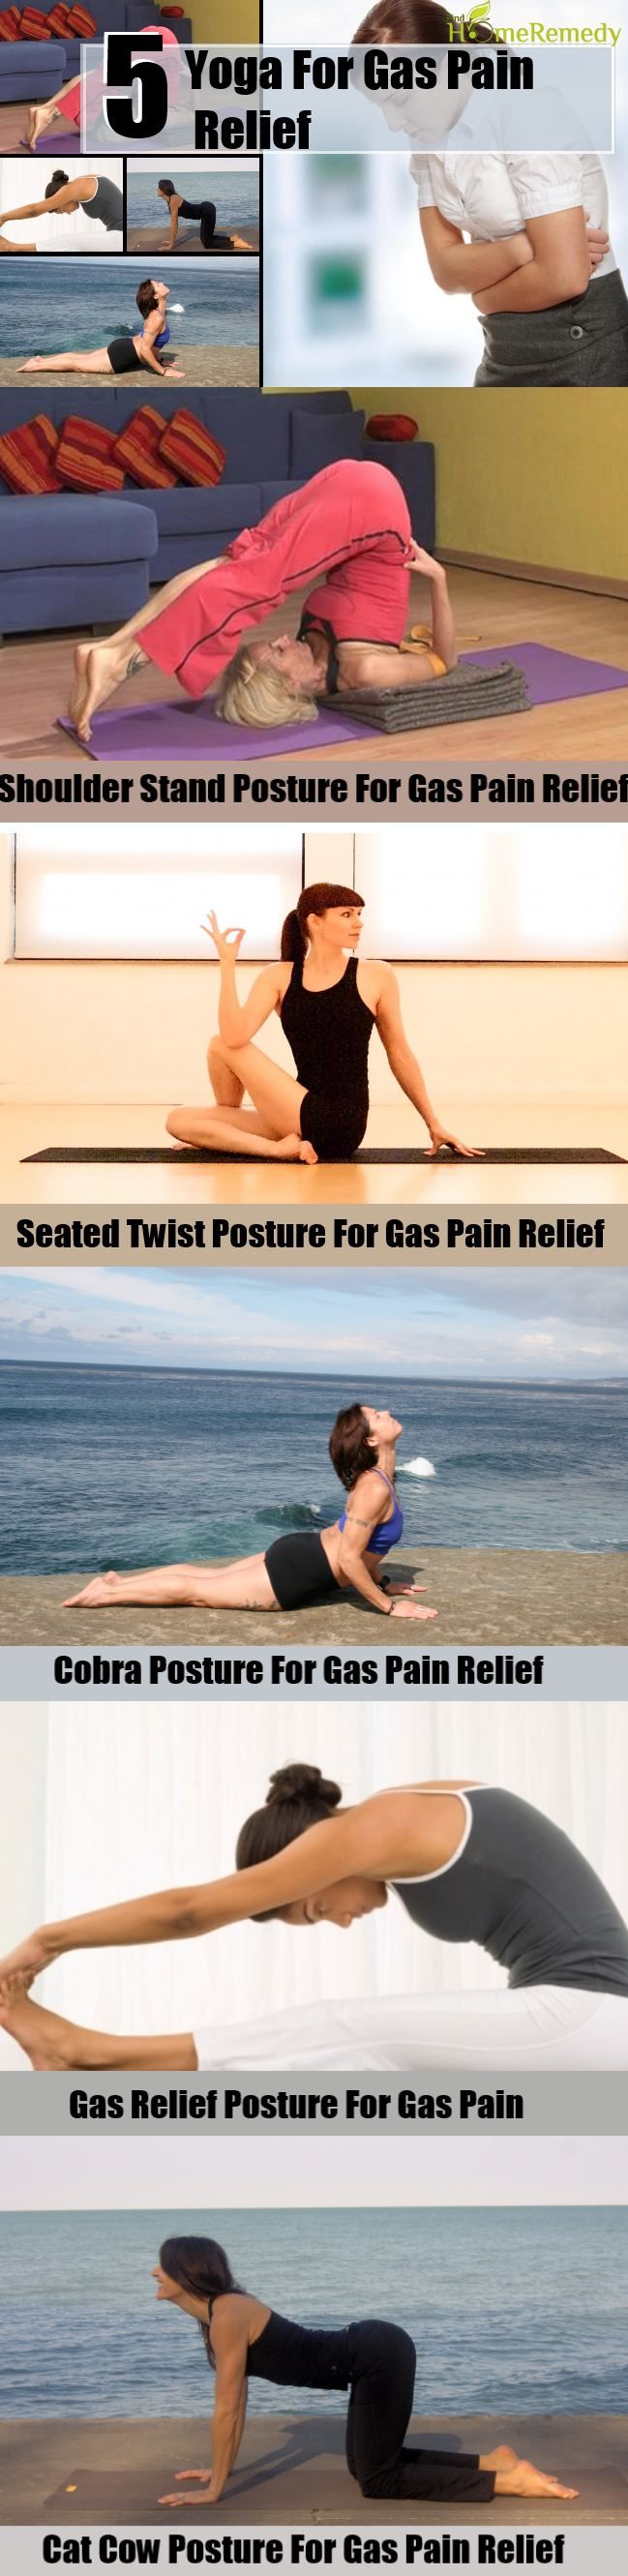 5 Yoga Pour Gaz Soulagement de la douleur